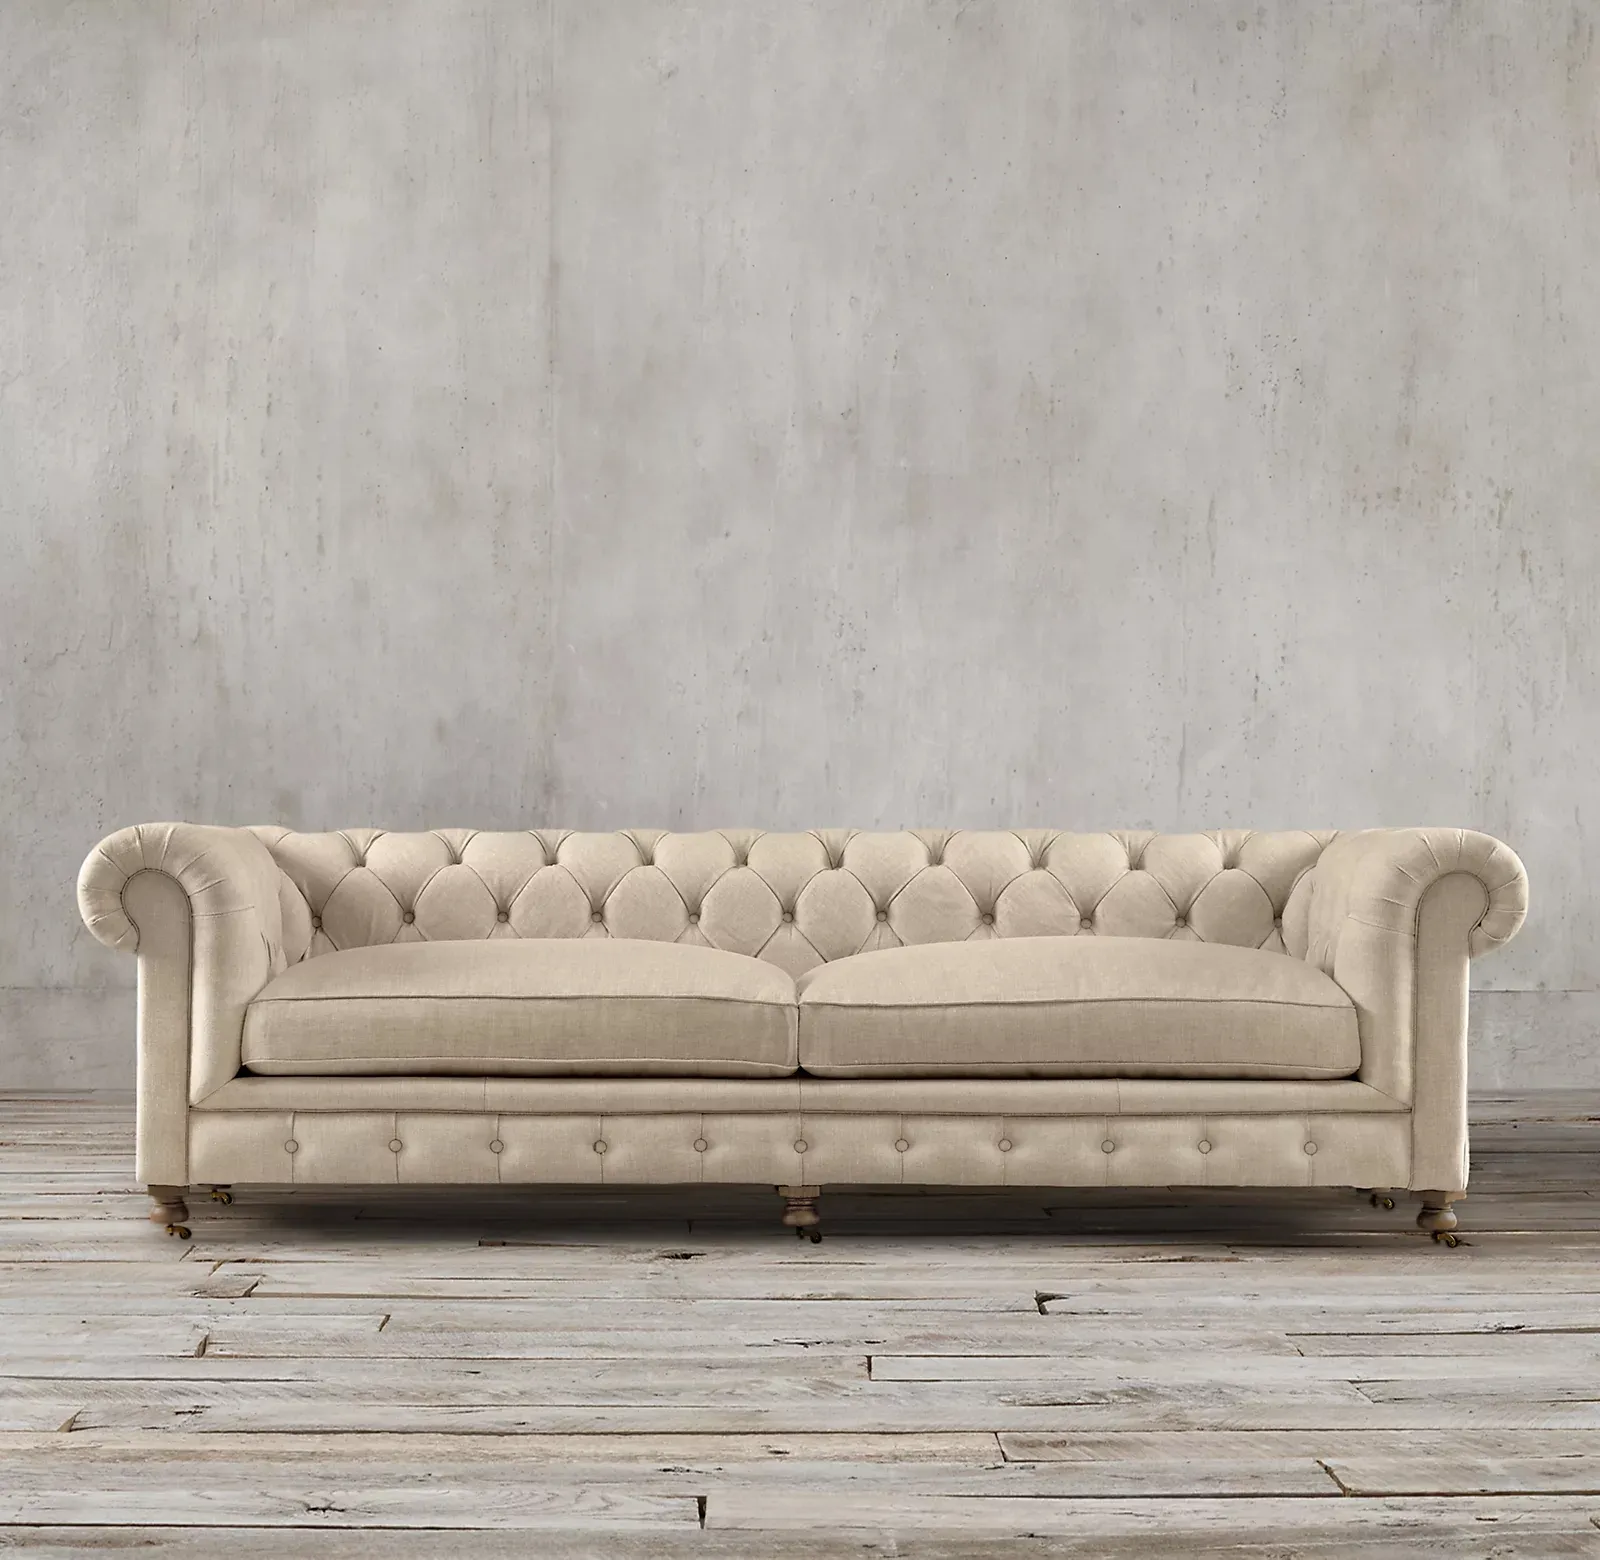 Sofá clásico estilo Chesterfield, muebles de interior para sala de estar, Base de madera, sofás de telas artesanales